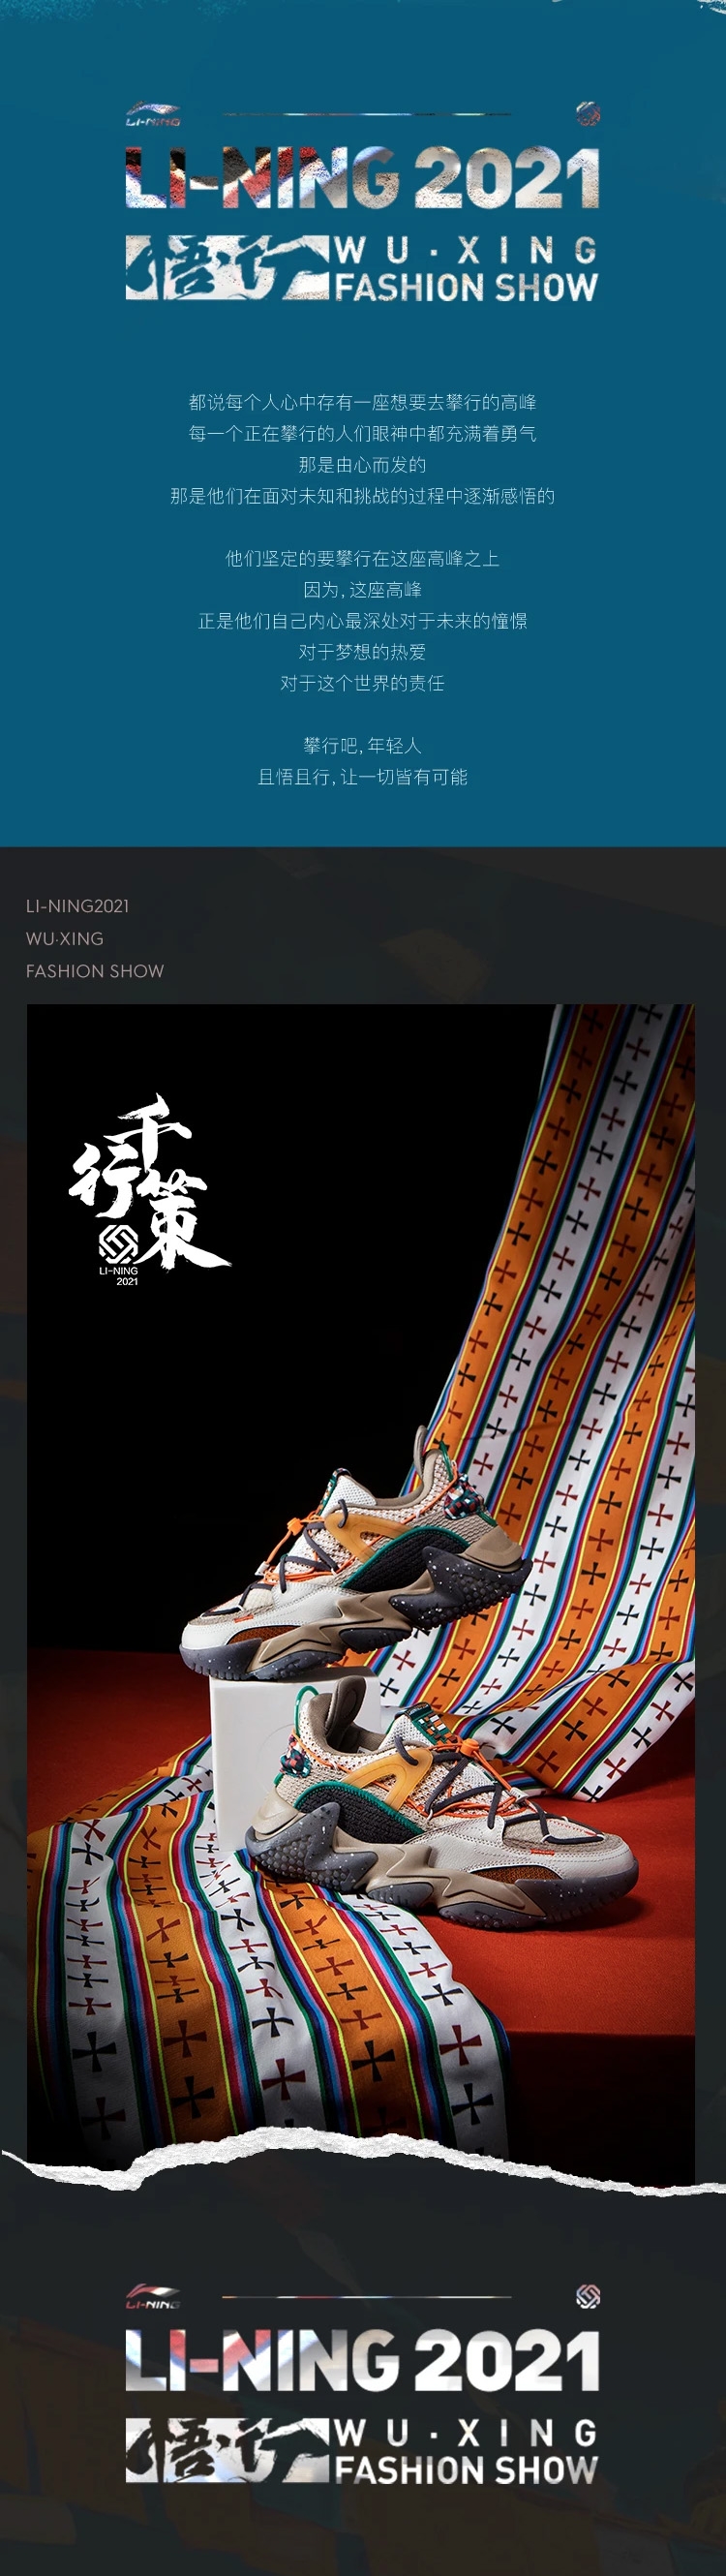 LI-NING 2021 WU XING FASHION SHOW CF 千行策 Men's Fashion Casual Shoes